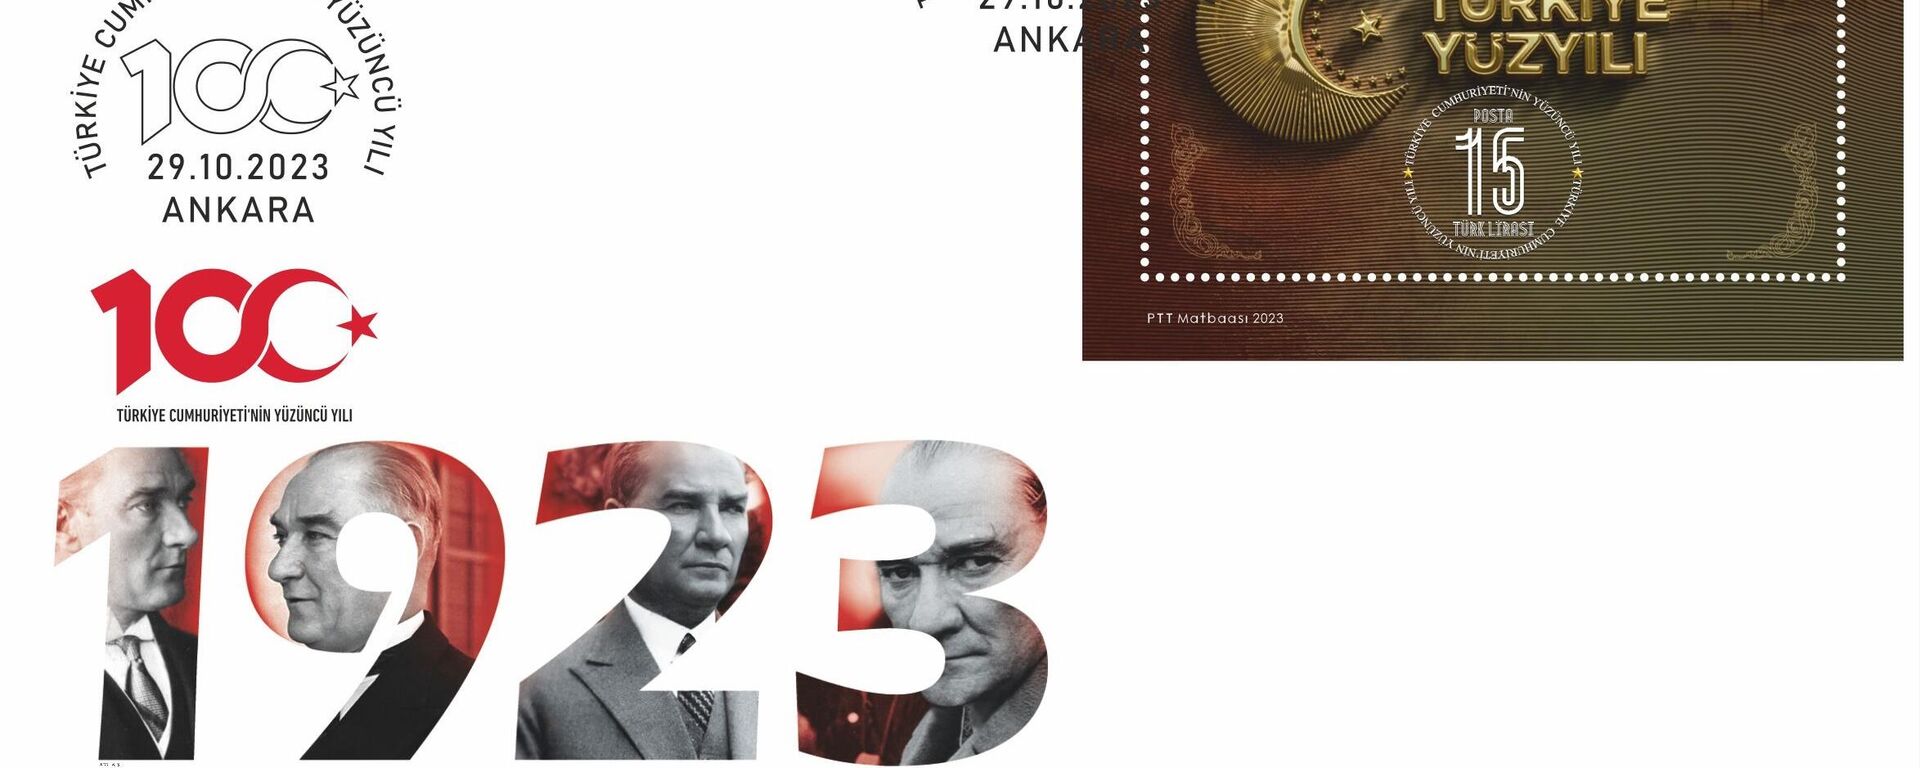 PTT AŞ, Türkiye Cumhuriyeti'nin Yüzüncü Yılı konulu anma pulu ve ilk gün zarfını tedavüle sundu. - Sputnik Türkiye, 1920, 29.10.2023